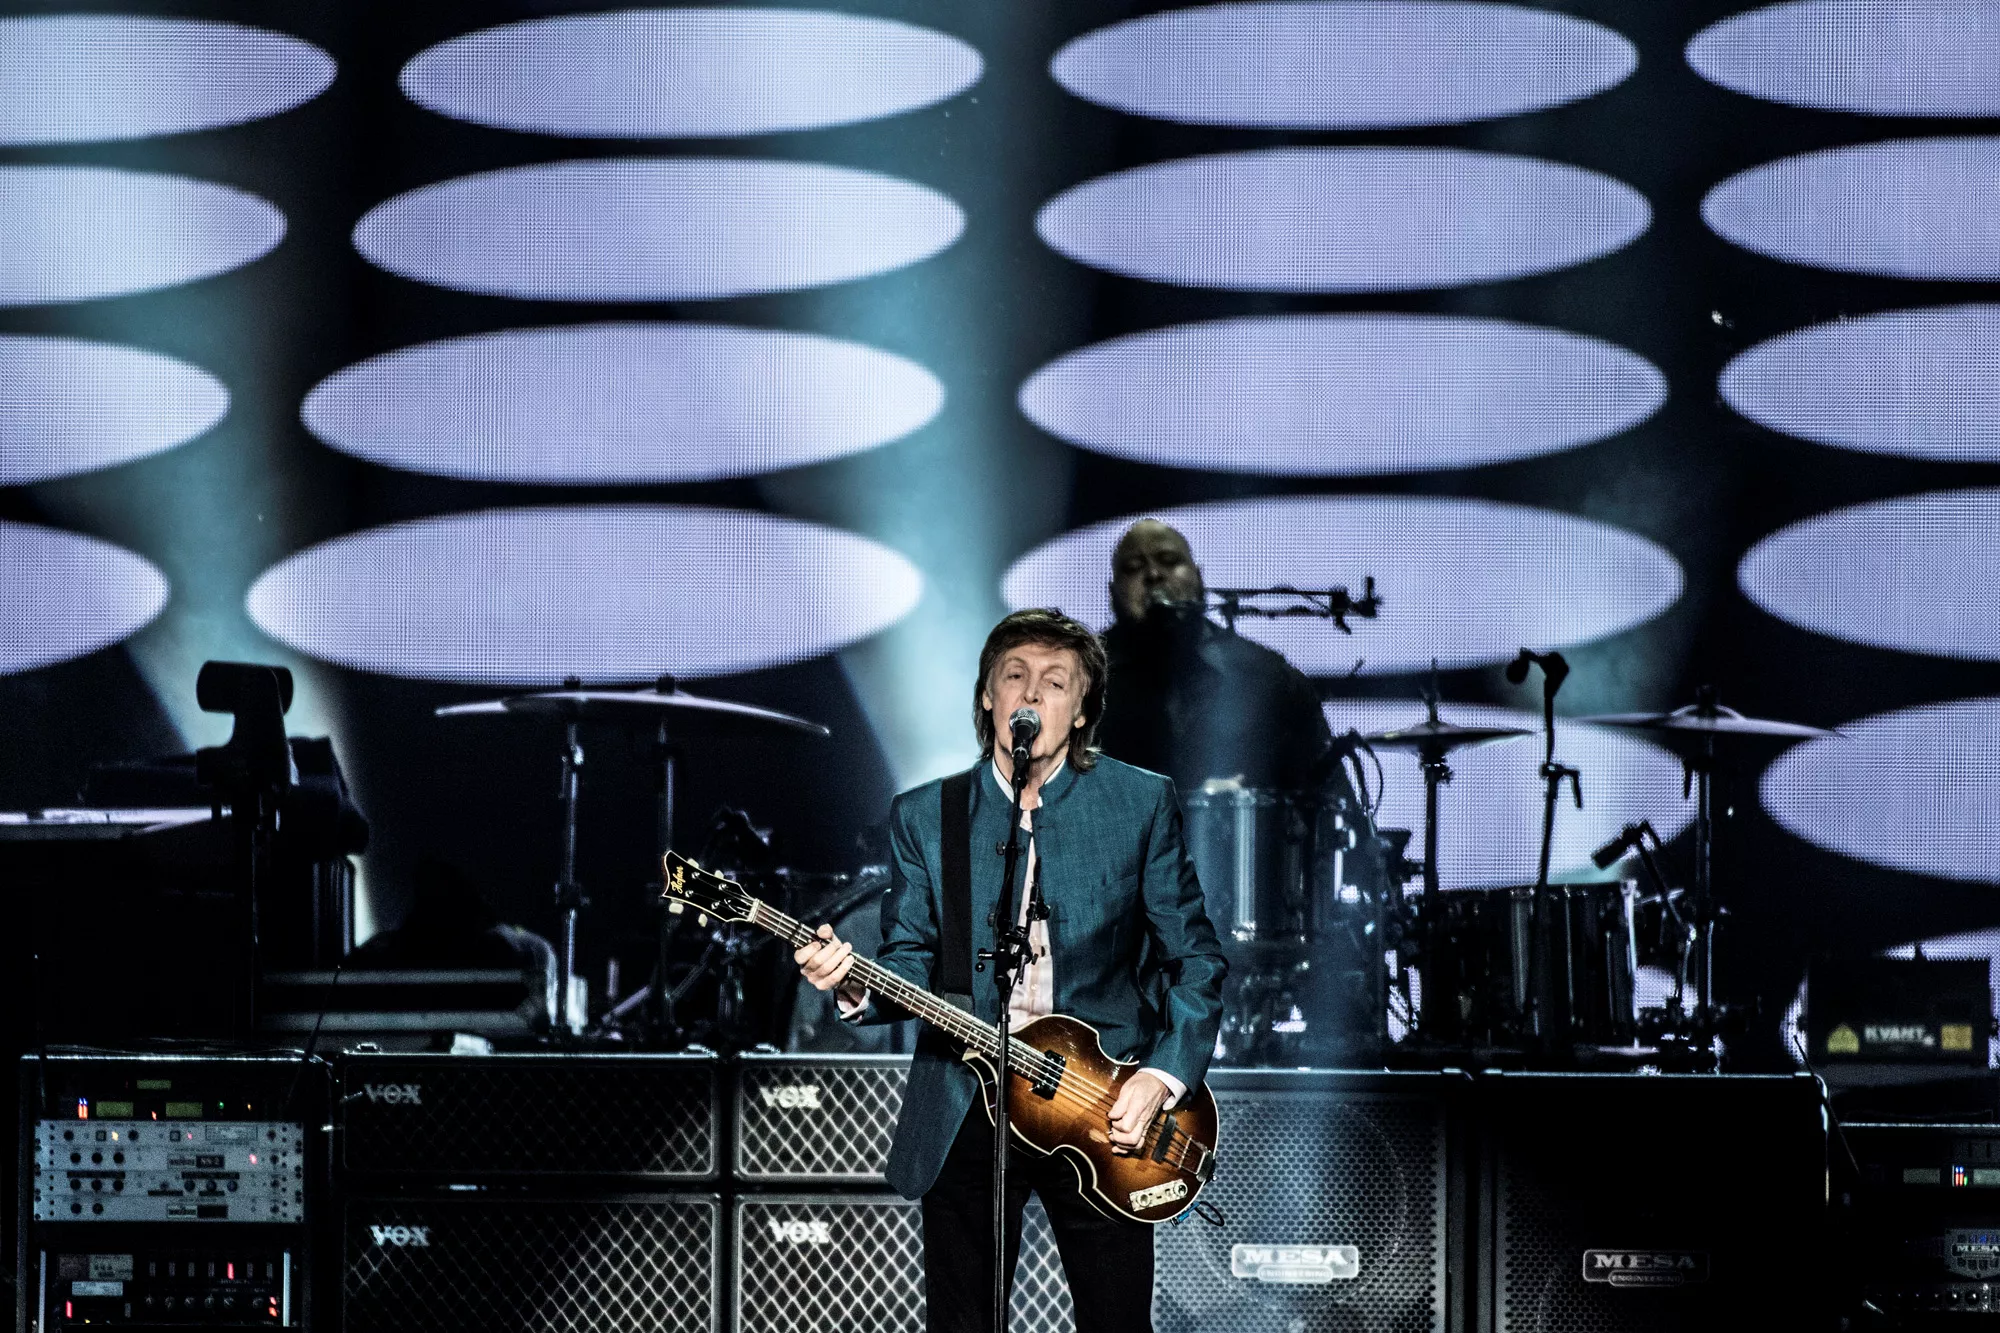 Danskerne er vilde med Paul McCartney